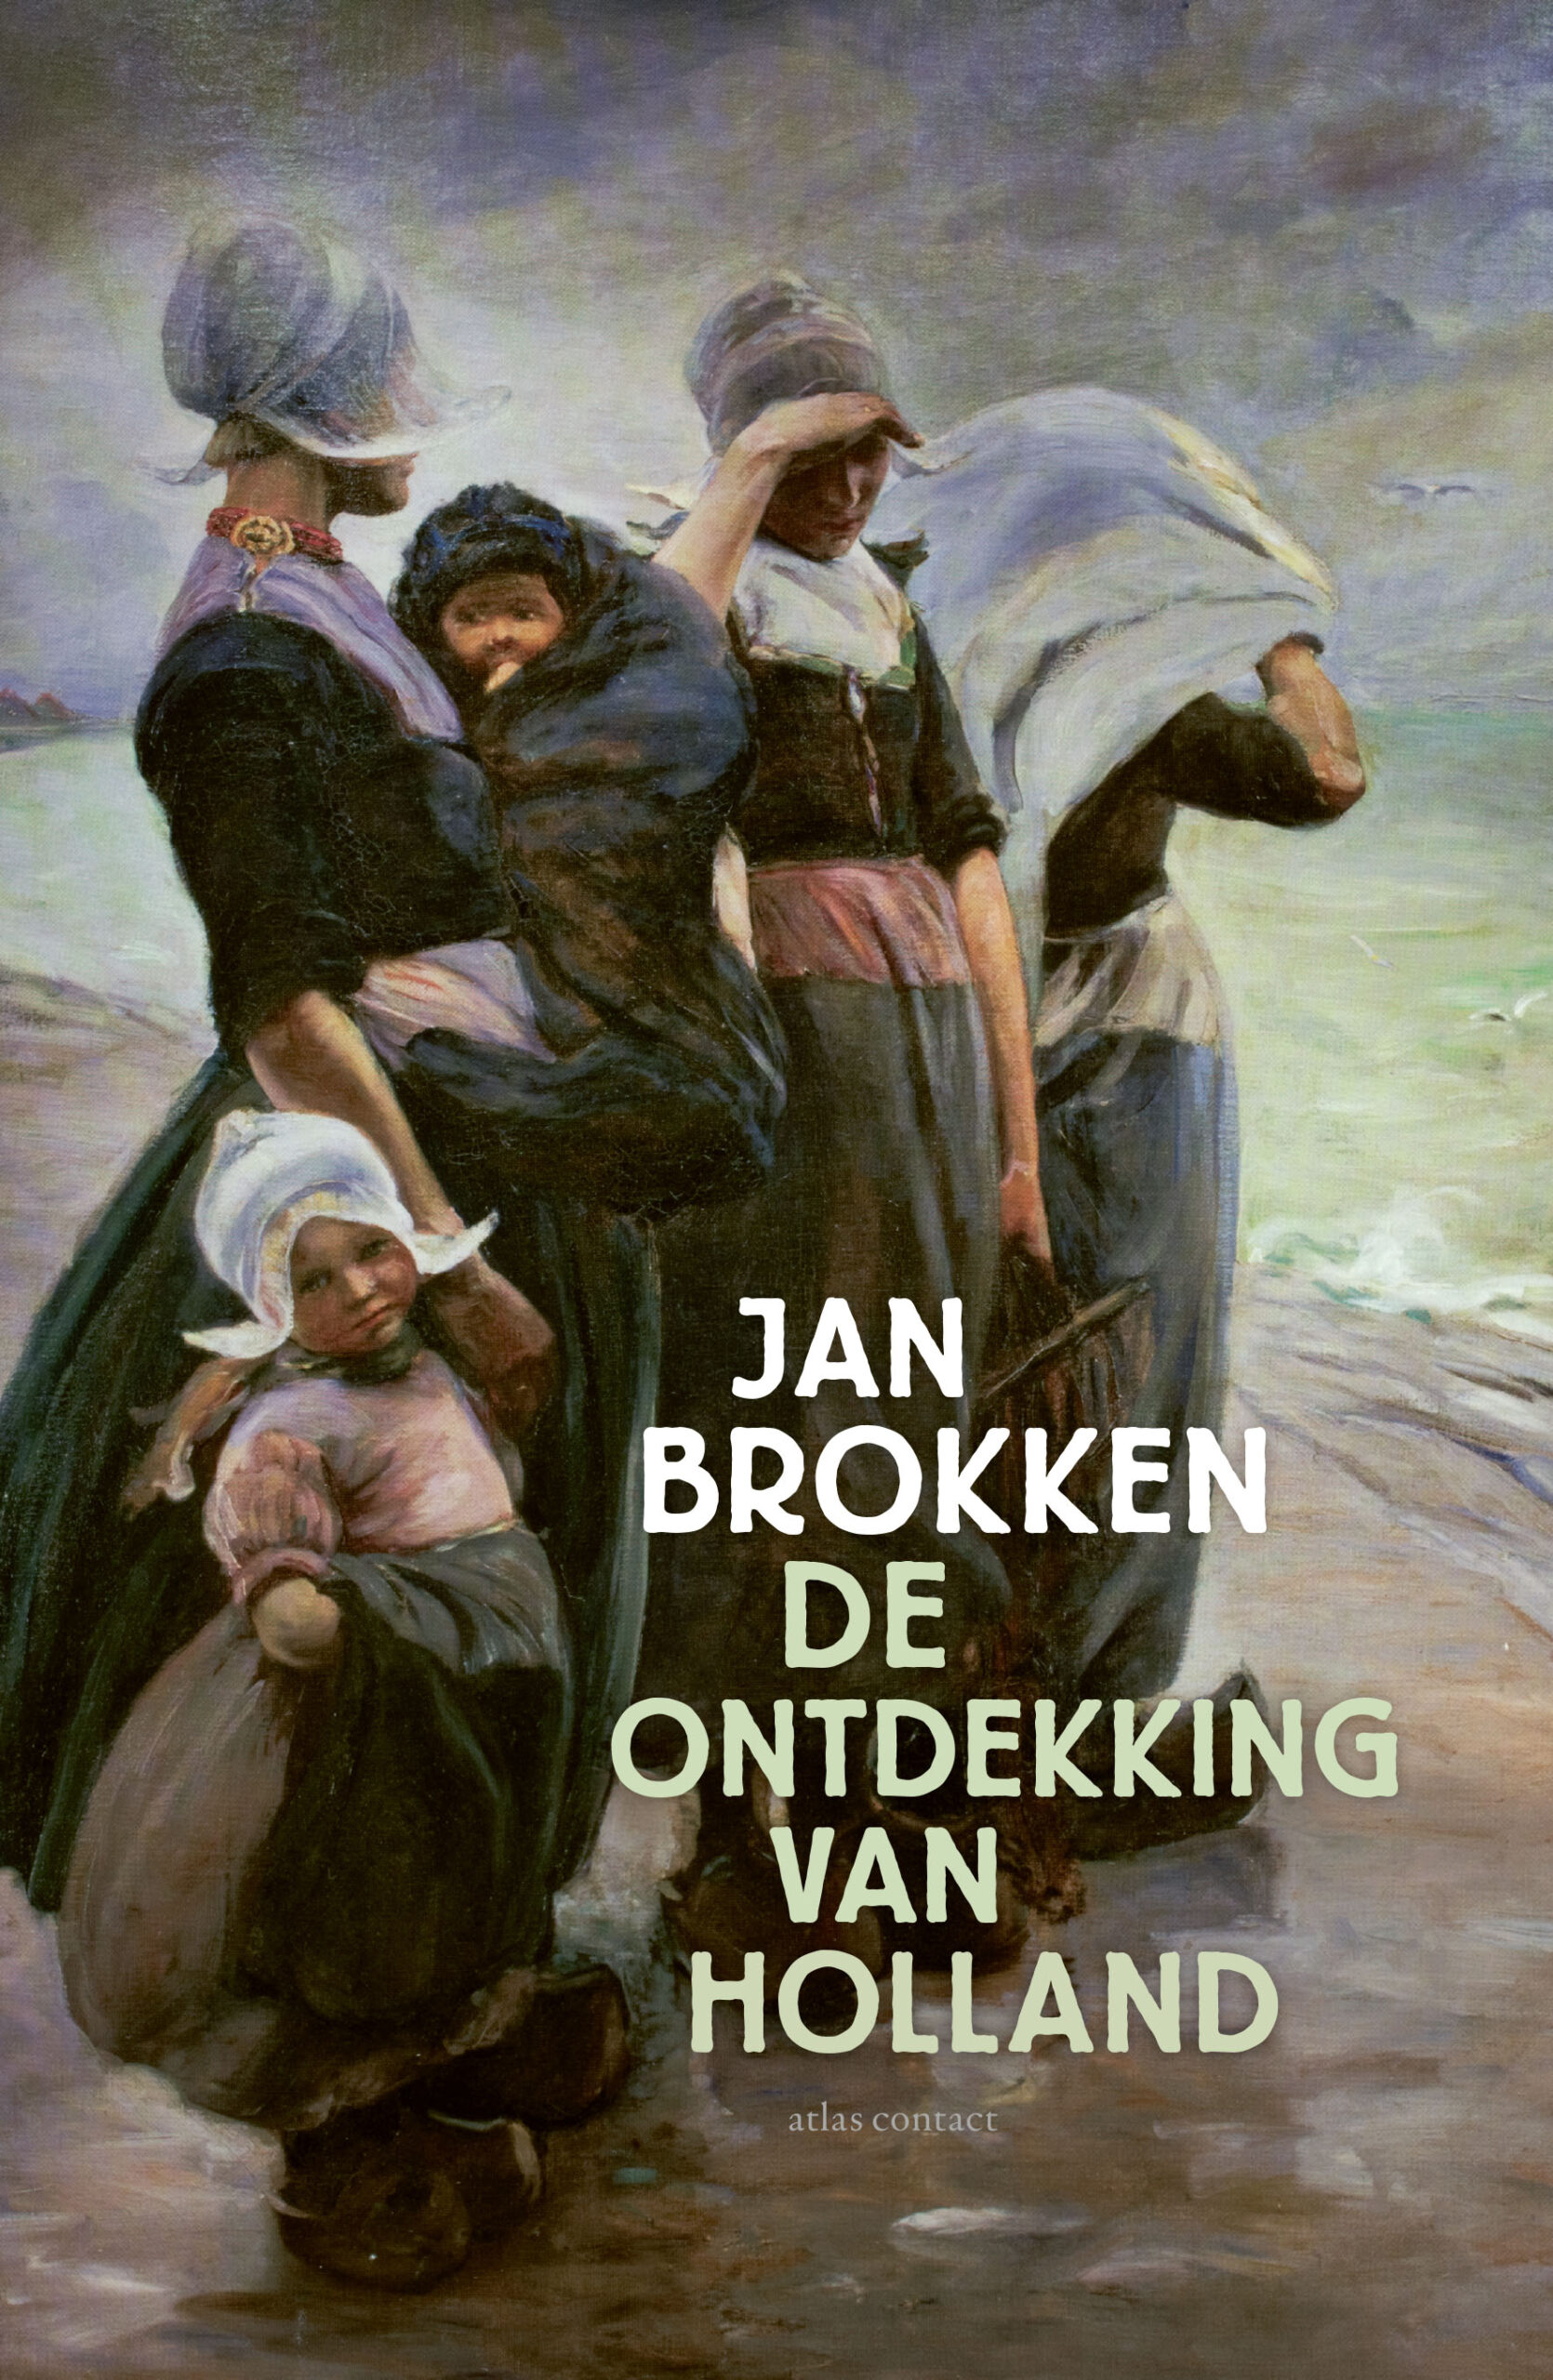    Jan Brokken over De ontdekking van Holland in ‘s-Hertogenbosch 